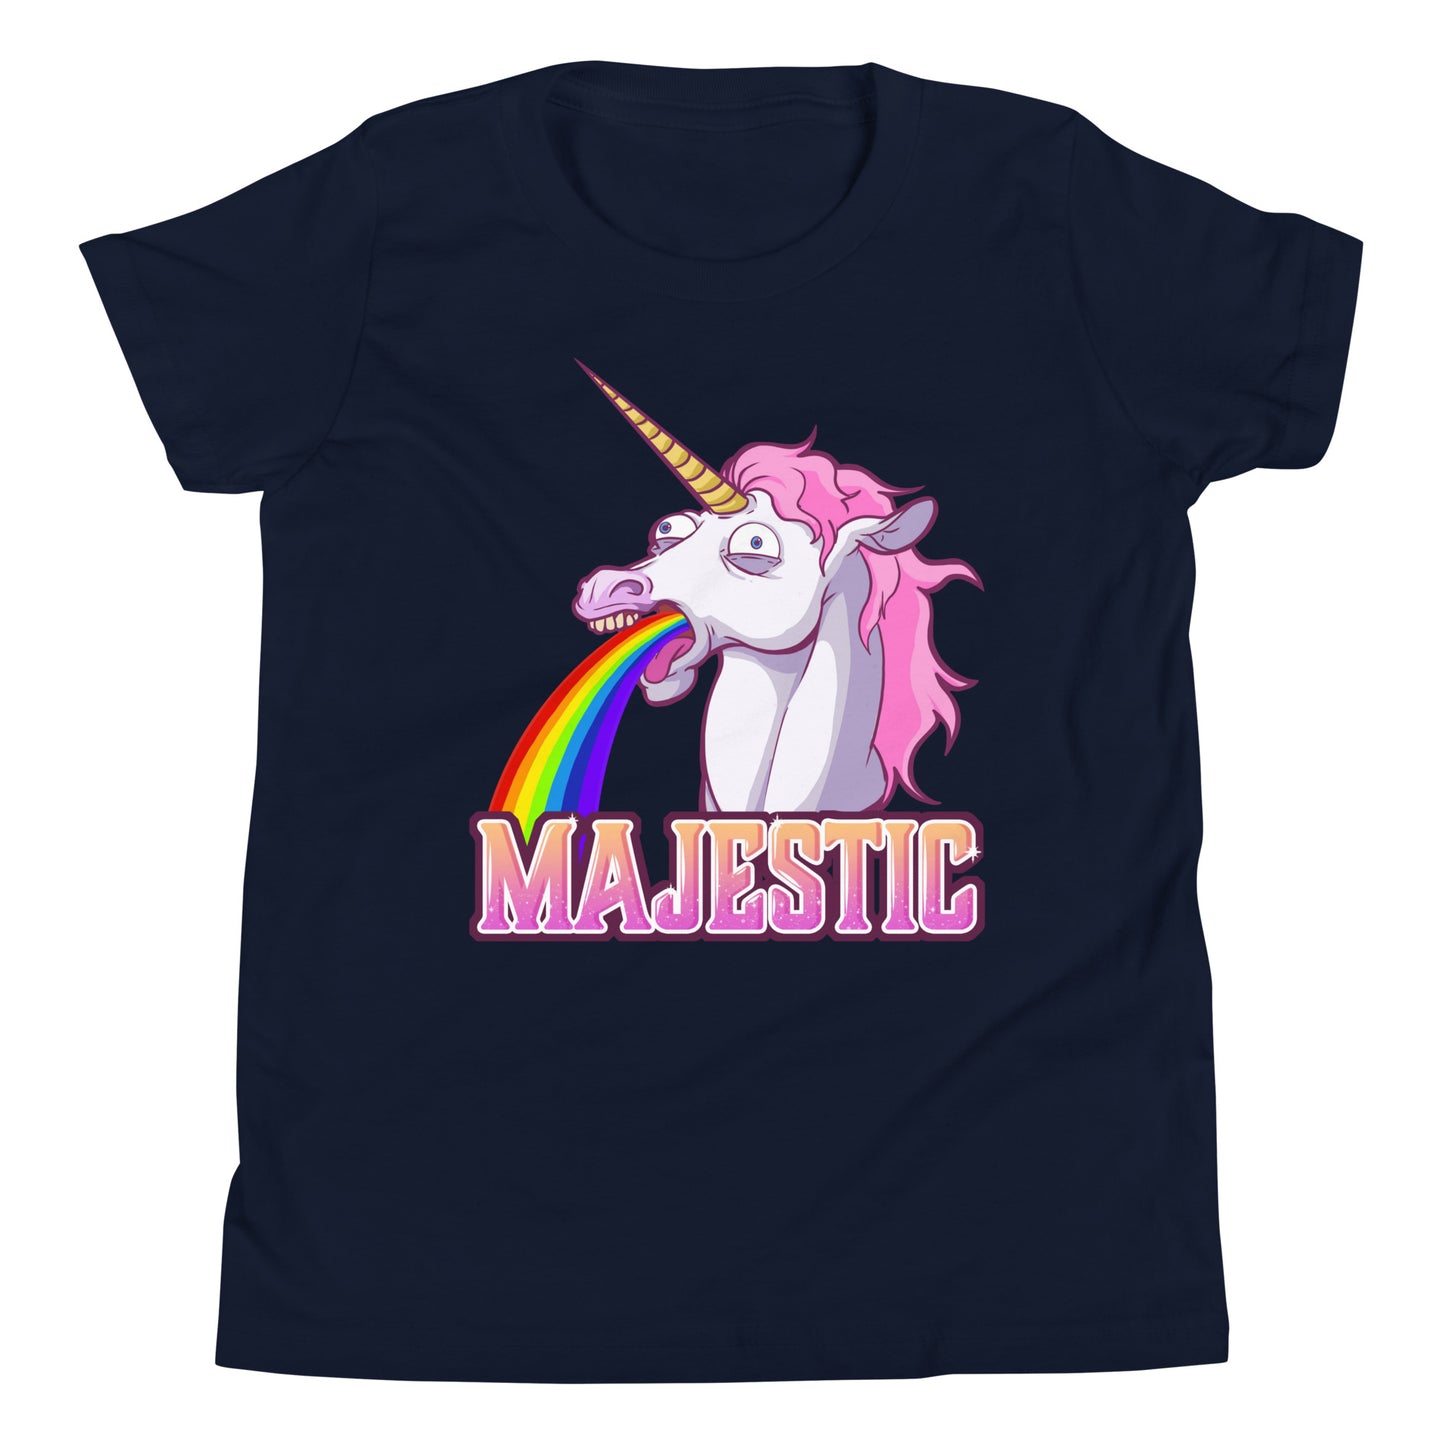 Majestic Unicorn Youth Short Sleeve T-Shirt  Level 1 Gamers Navy S 